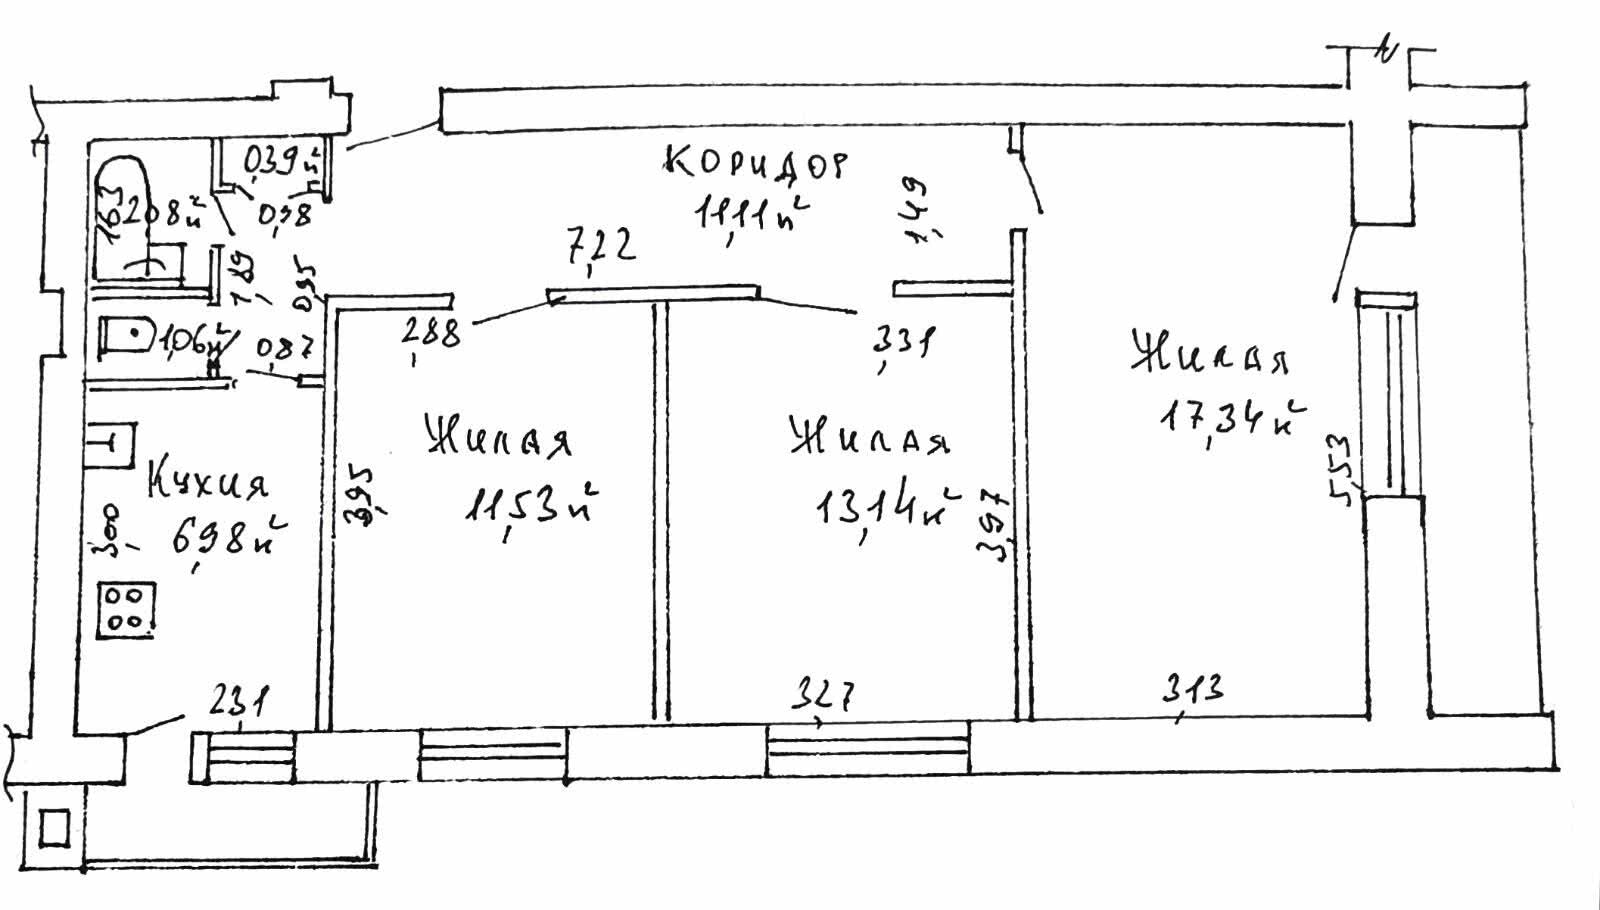 Цена продажи квартиры, Гомель, ул. Курчатова, д. 9